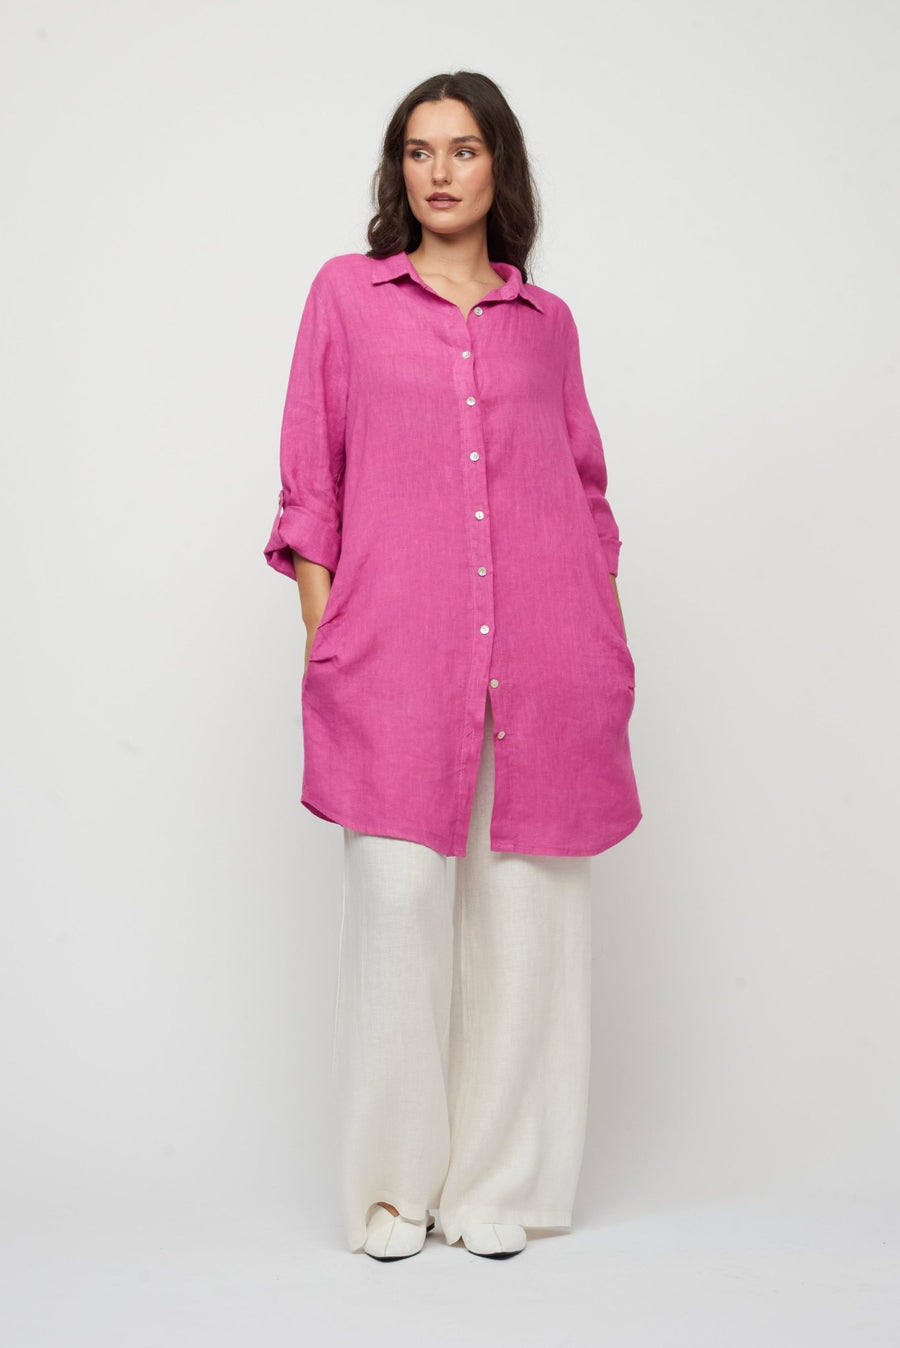 Long Linen Shirt by Pistache - Blue Sky Fashions & Lingerie